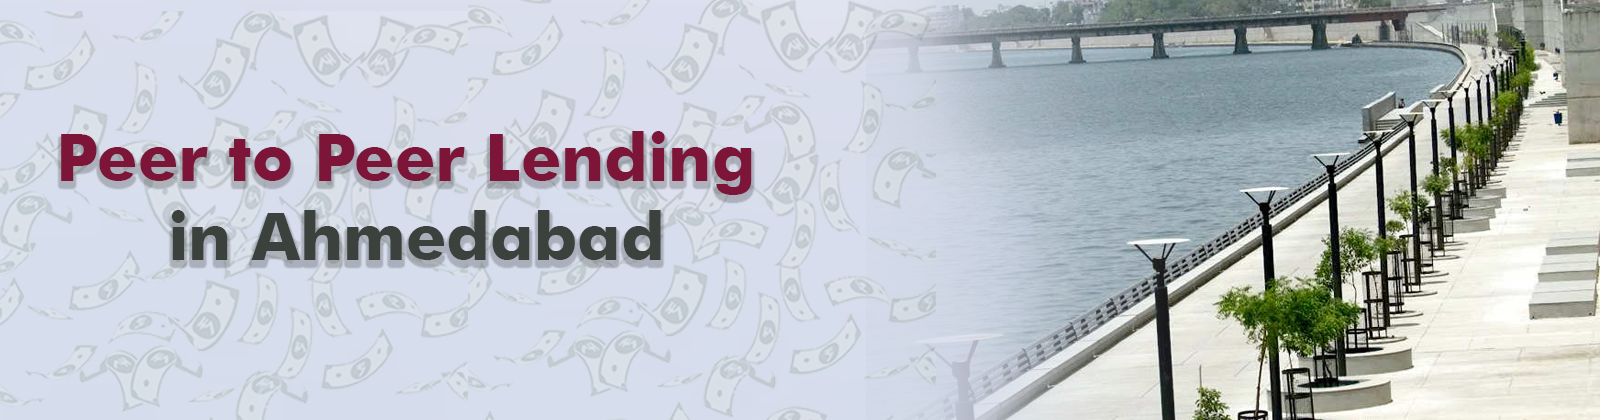 Peer to Peer Lending in Ahmedabad